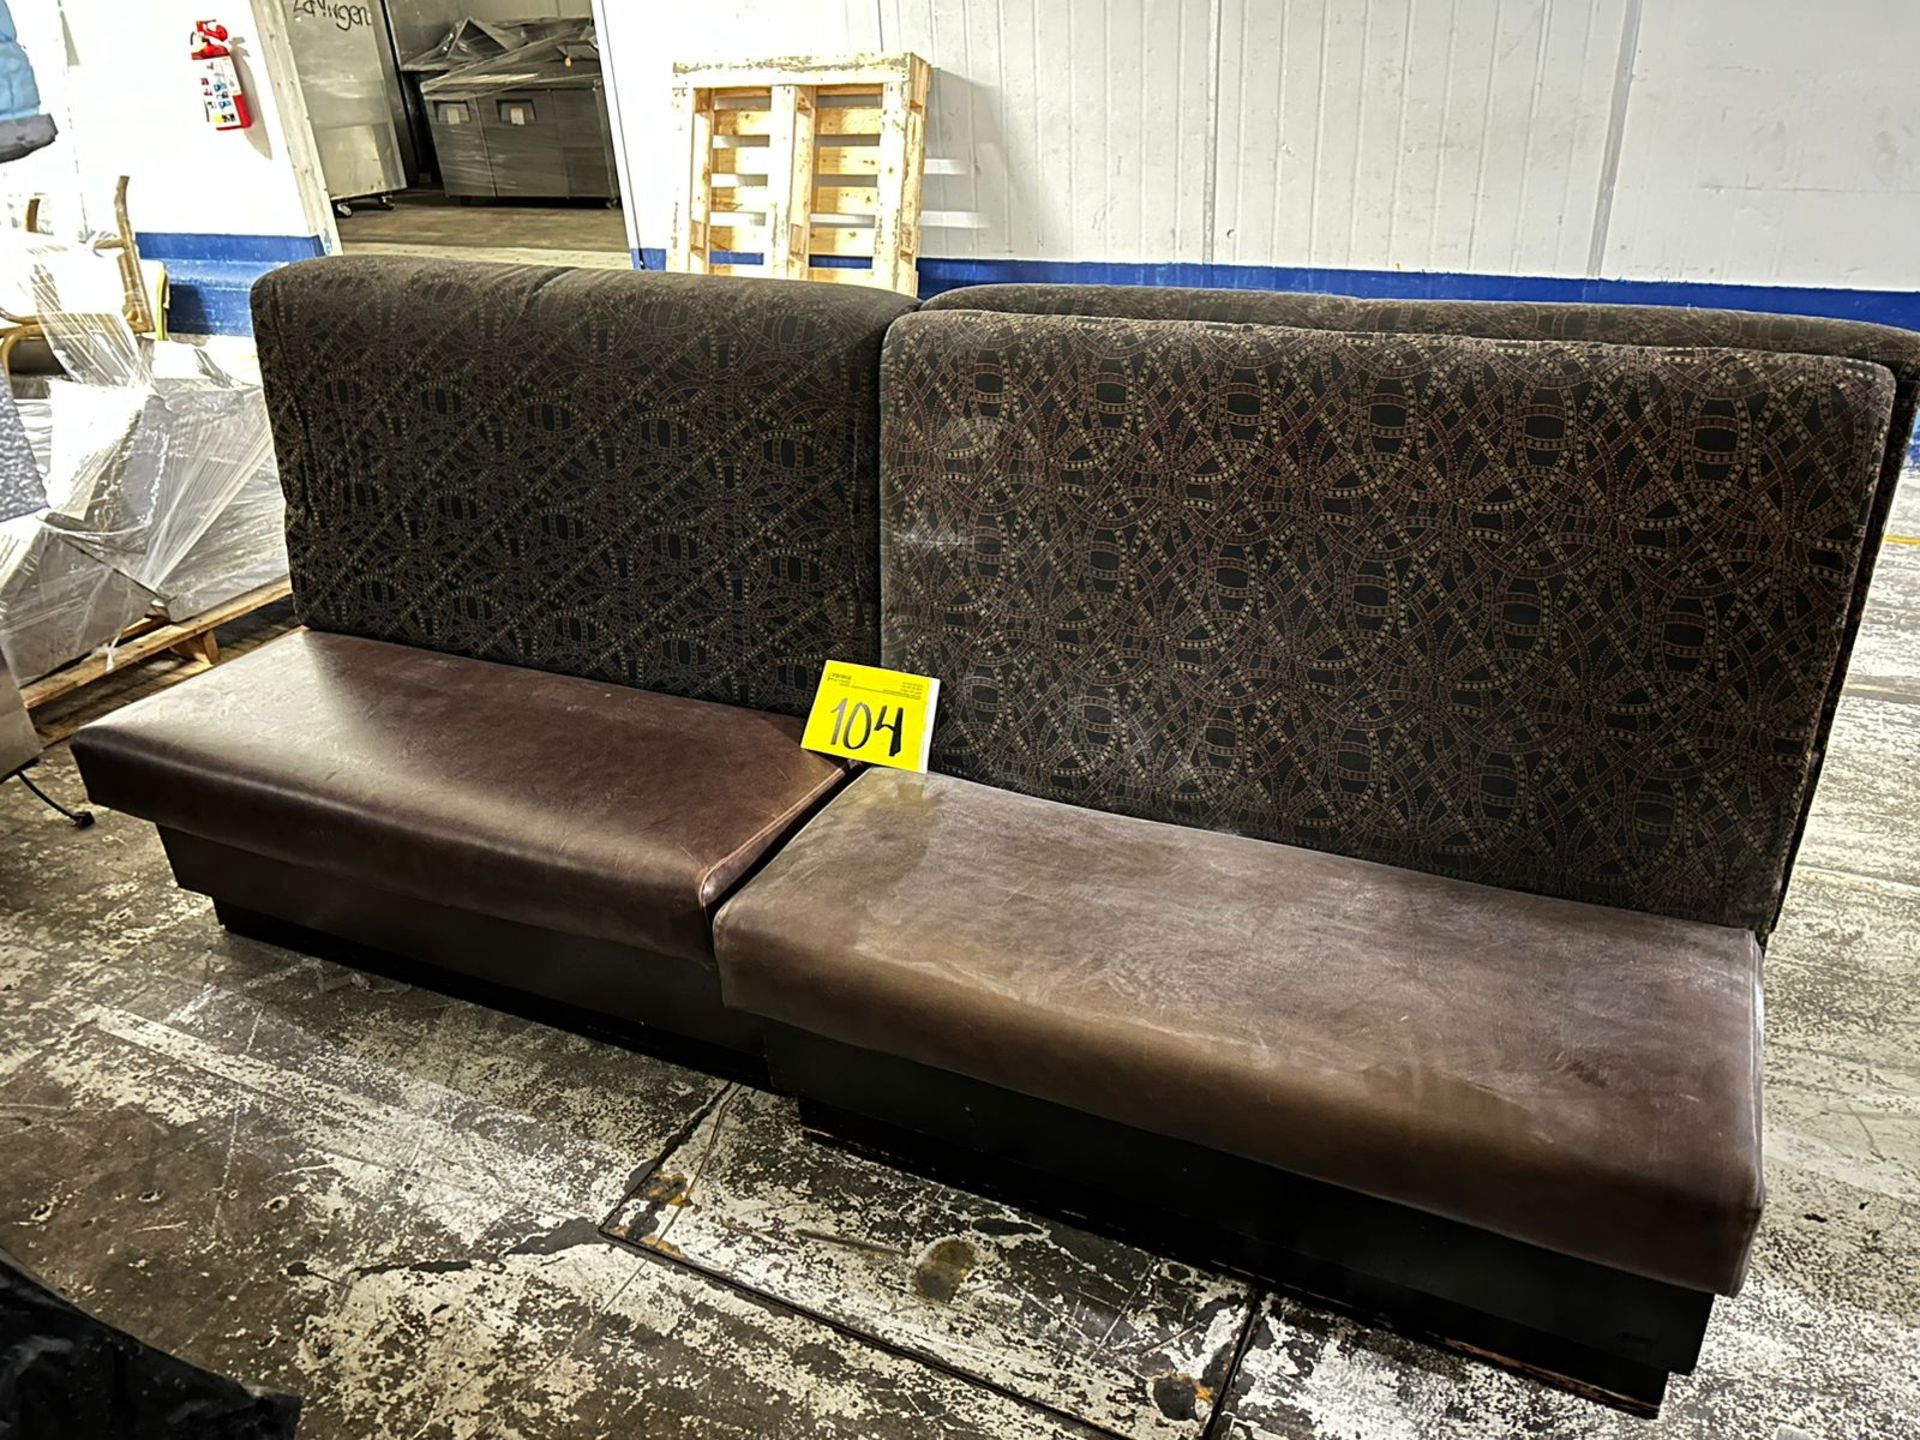 Lote de 3 Piezas, Contiene; 1 sillón doble tipo boot en madera con asientos en tela tipo vinipiel c - Image 3 of 4